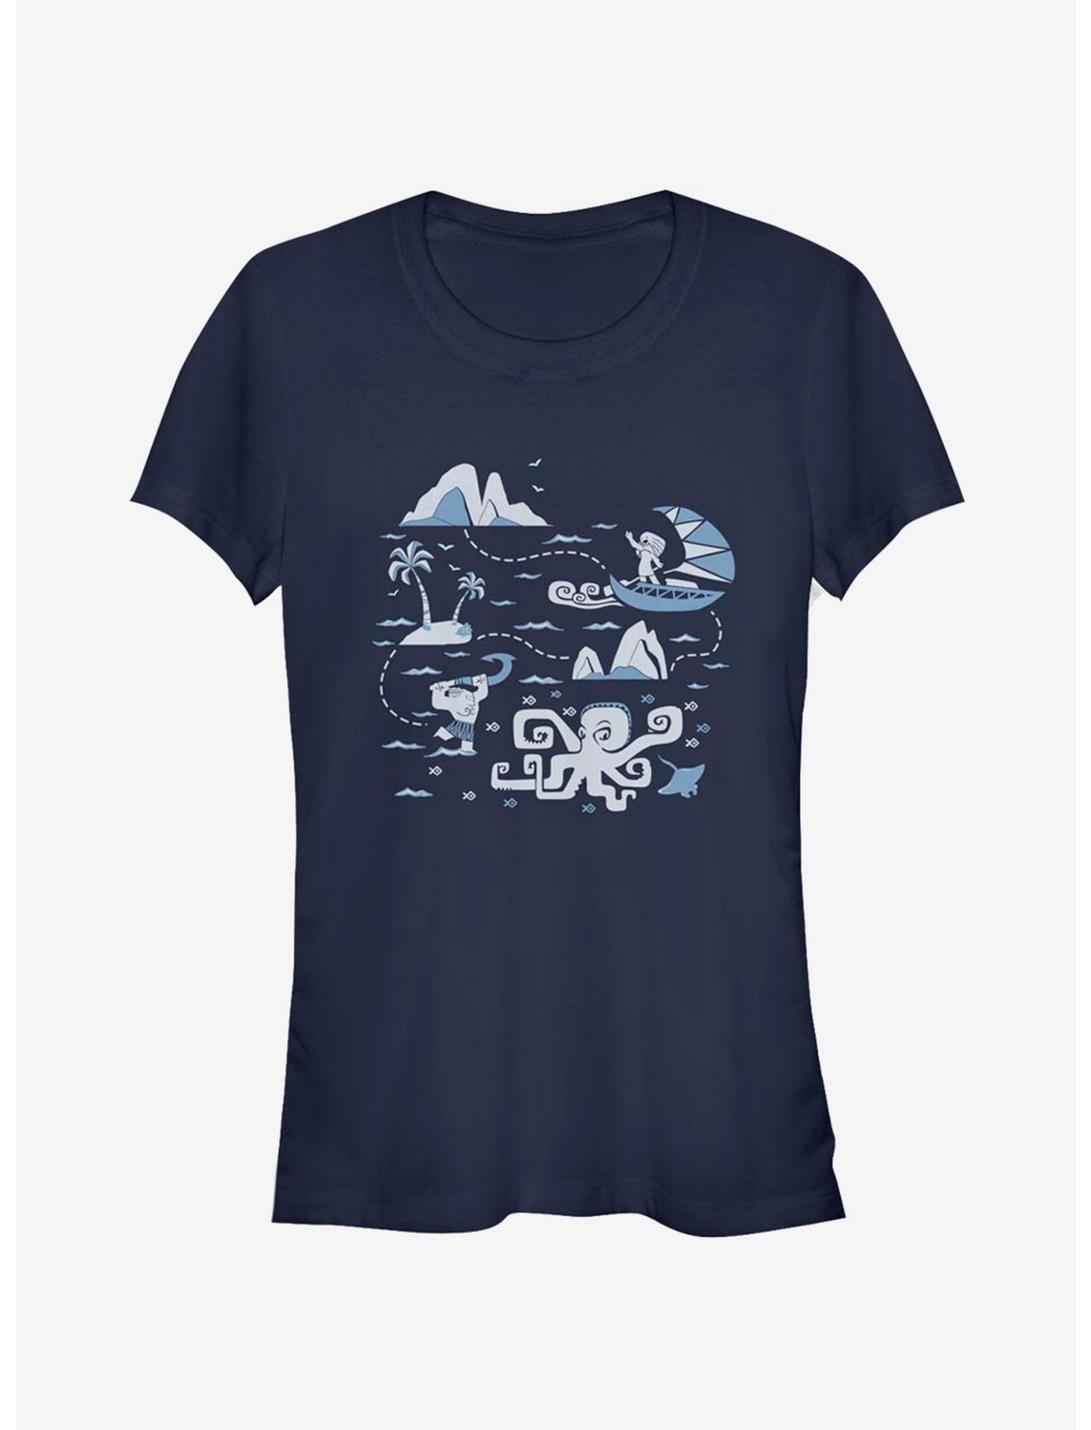 Disney Moana Voyage Collage Girls T-Shirt, NAVY, hi-res